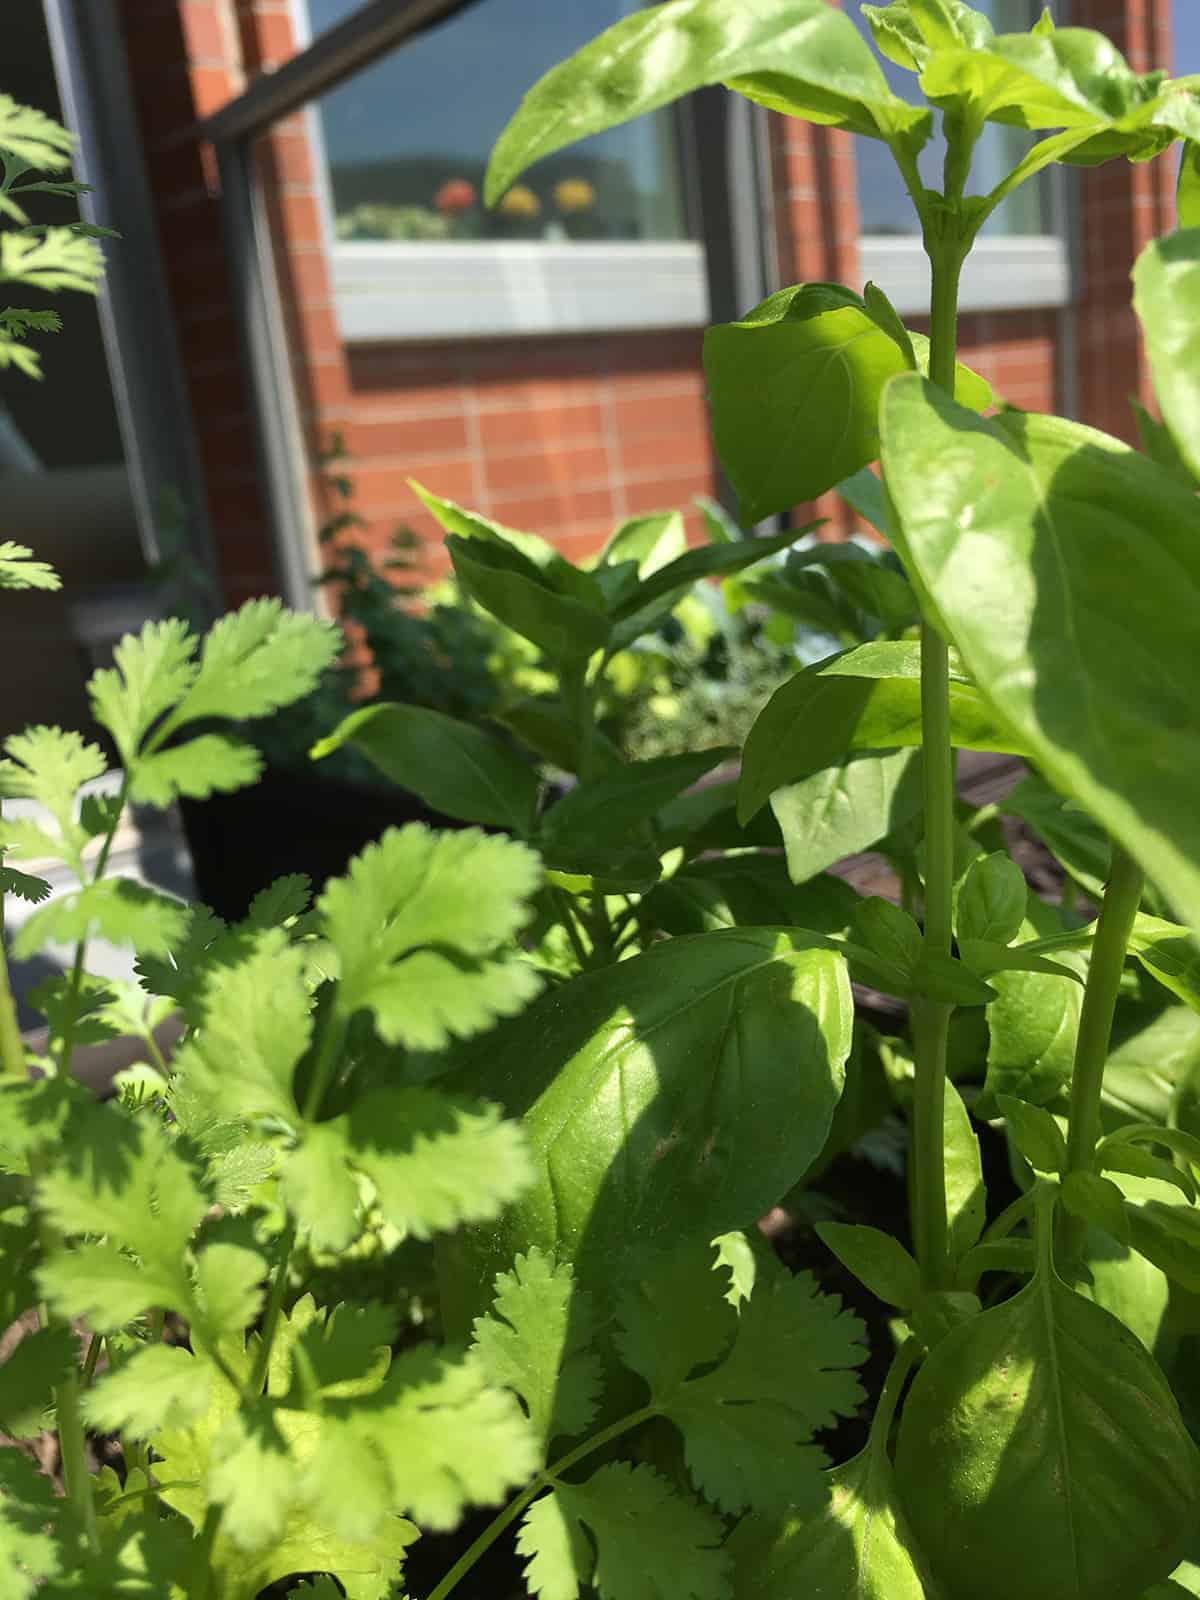 Basil and cilantro growing in a balcony garden box